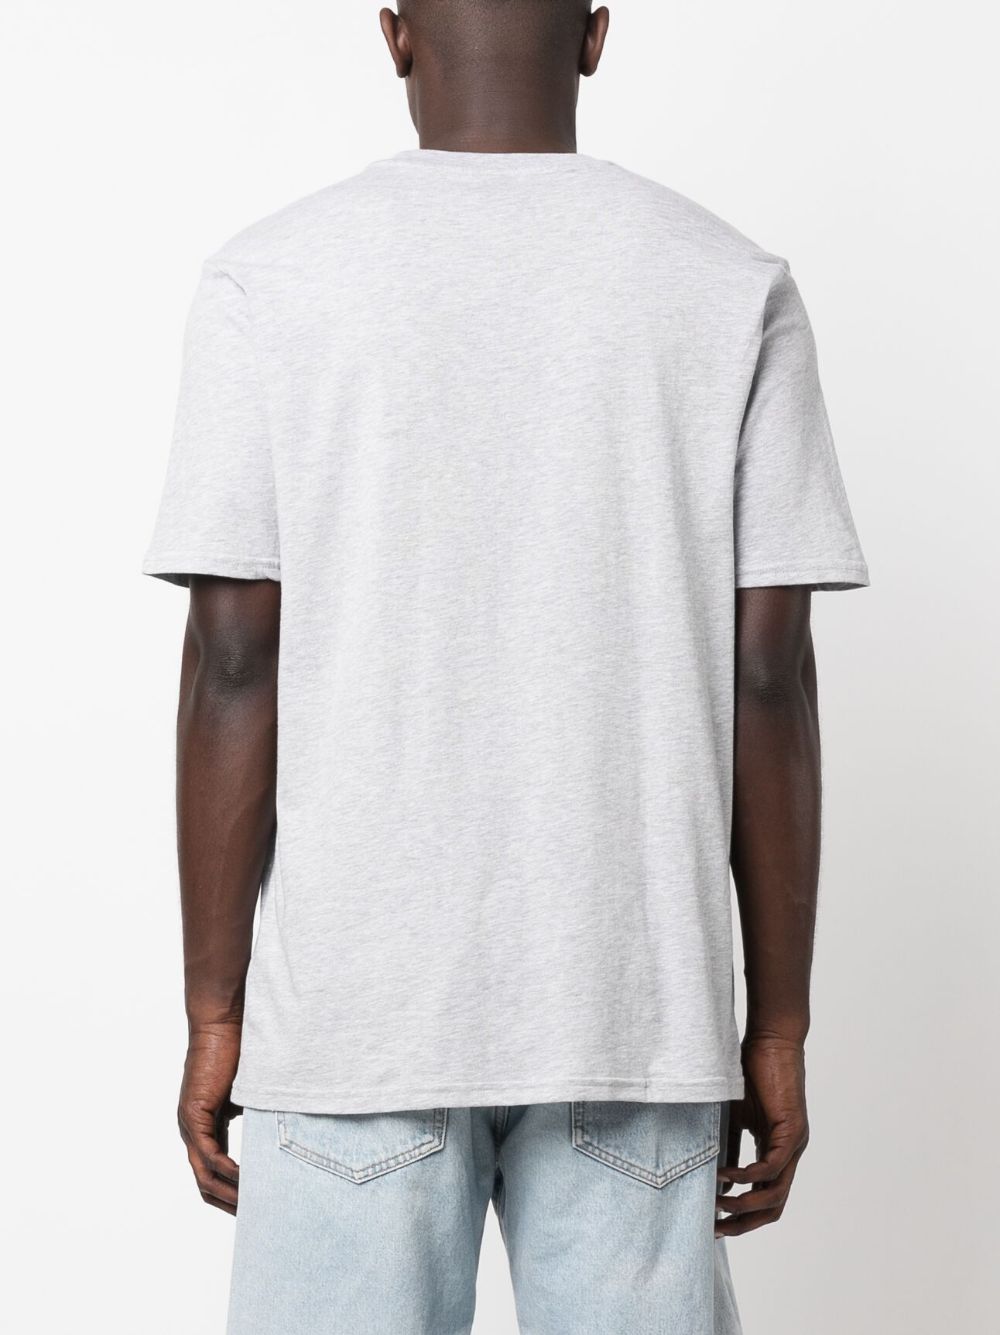 Mark II cotton-blend T-shirt